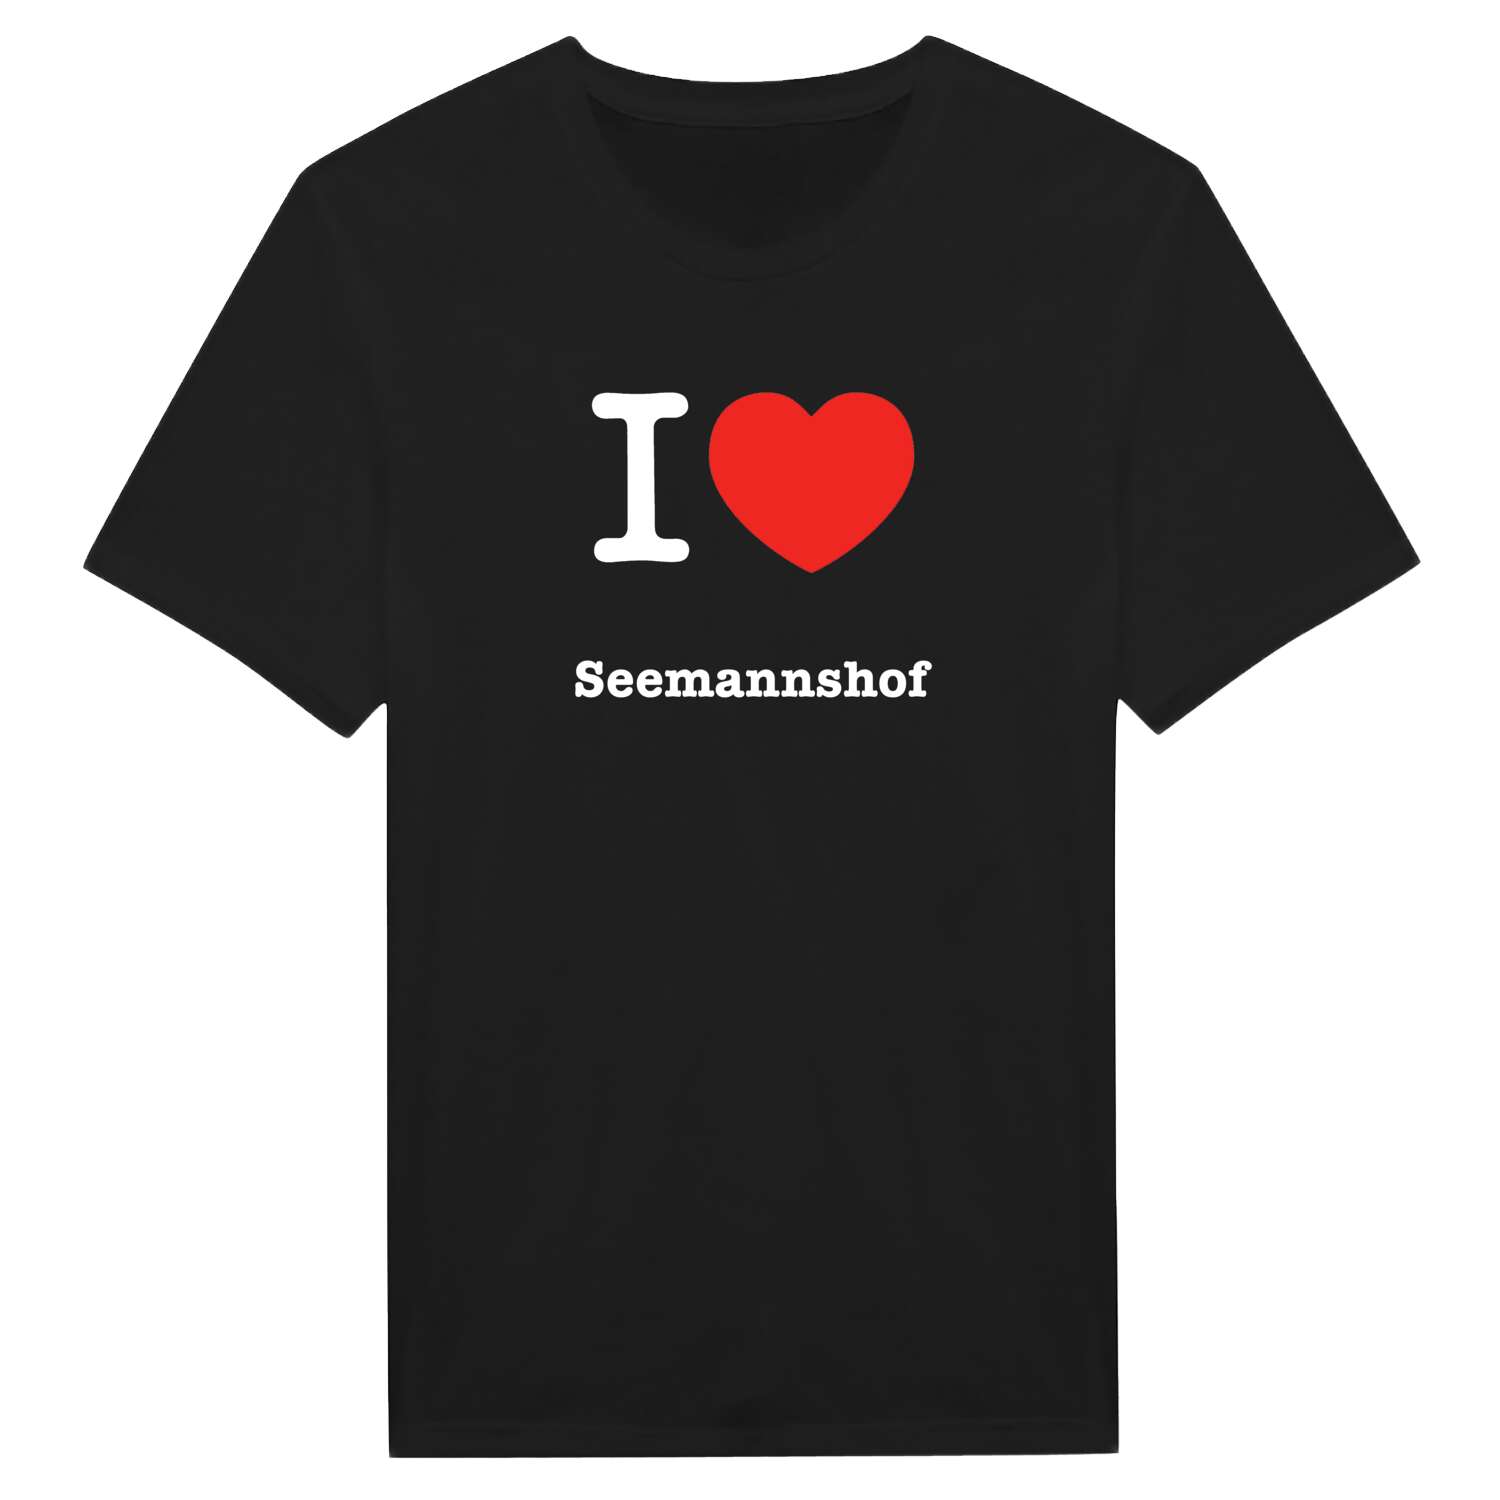 Seemannshof T-Shirt »I love«